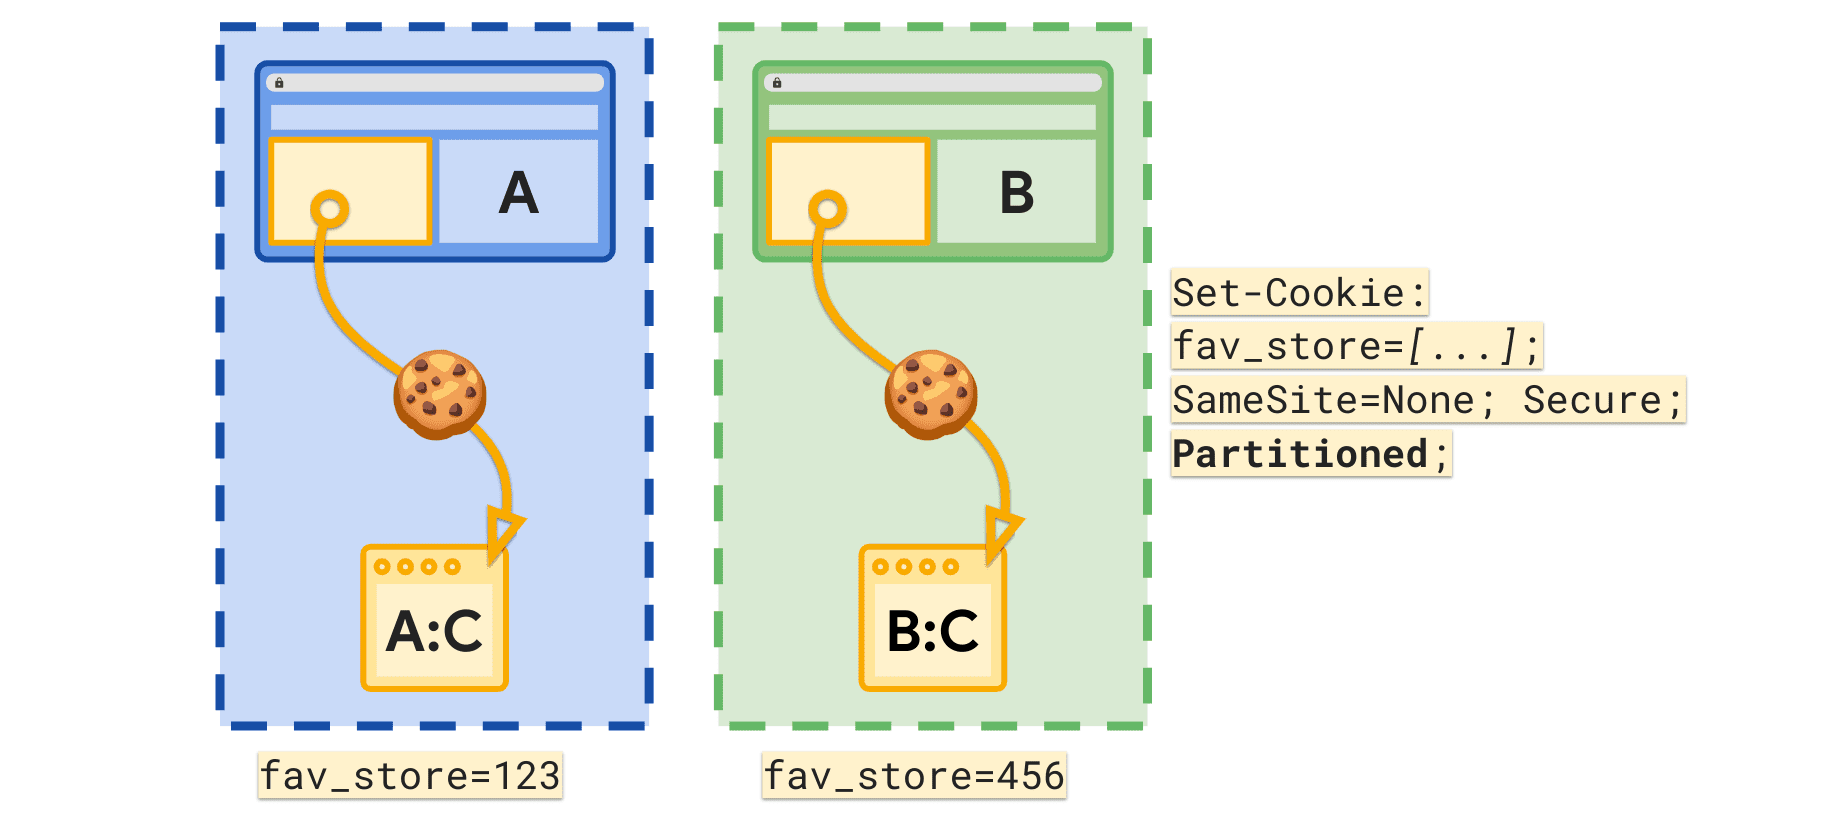 Atrybut partycjonowany umożliwia ustawienie osobnego pliku cookie fav_store dla każdej witryny najwyższego poziomu.